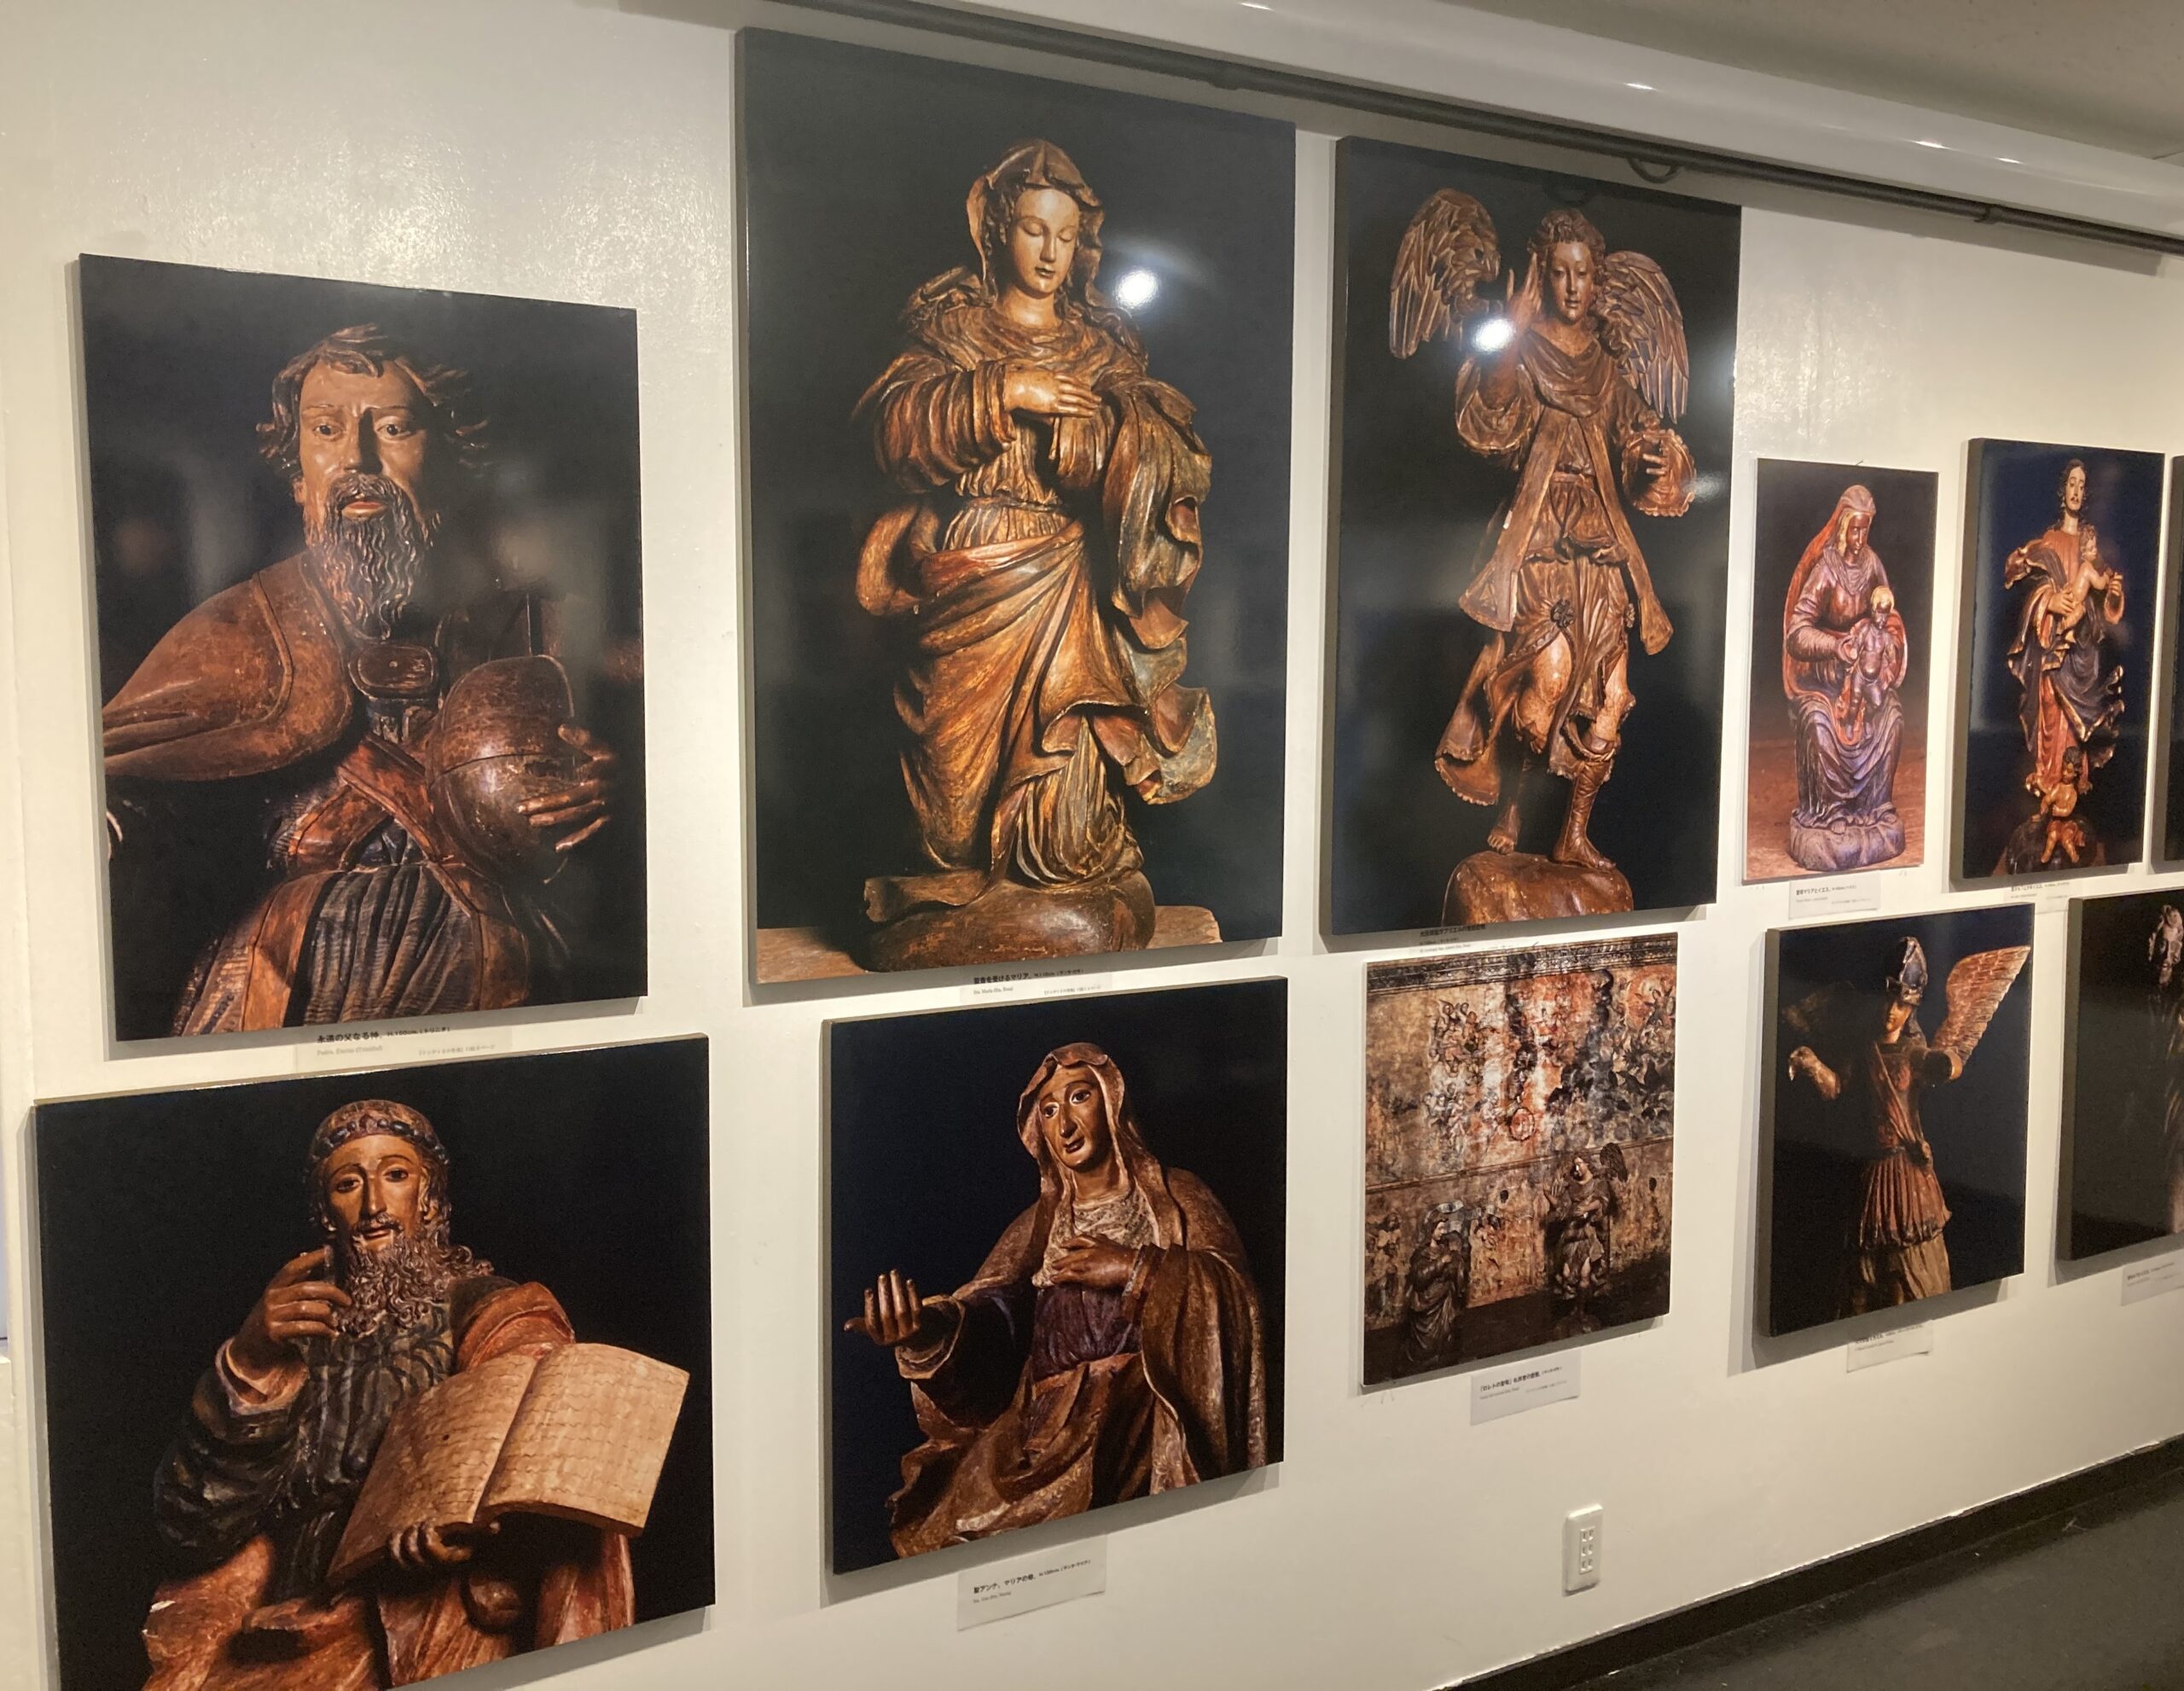 写真展の展示室に飾られたインディオの聖像のパネル写真の数々②